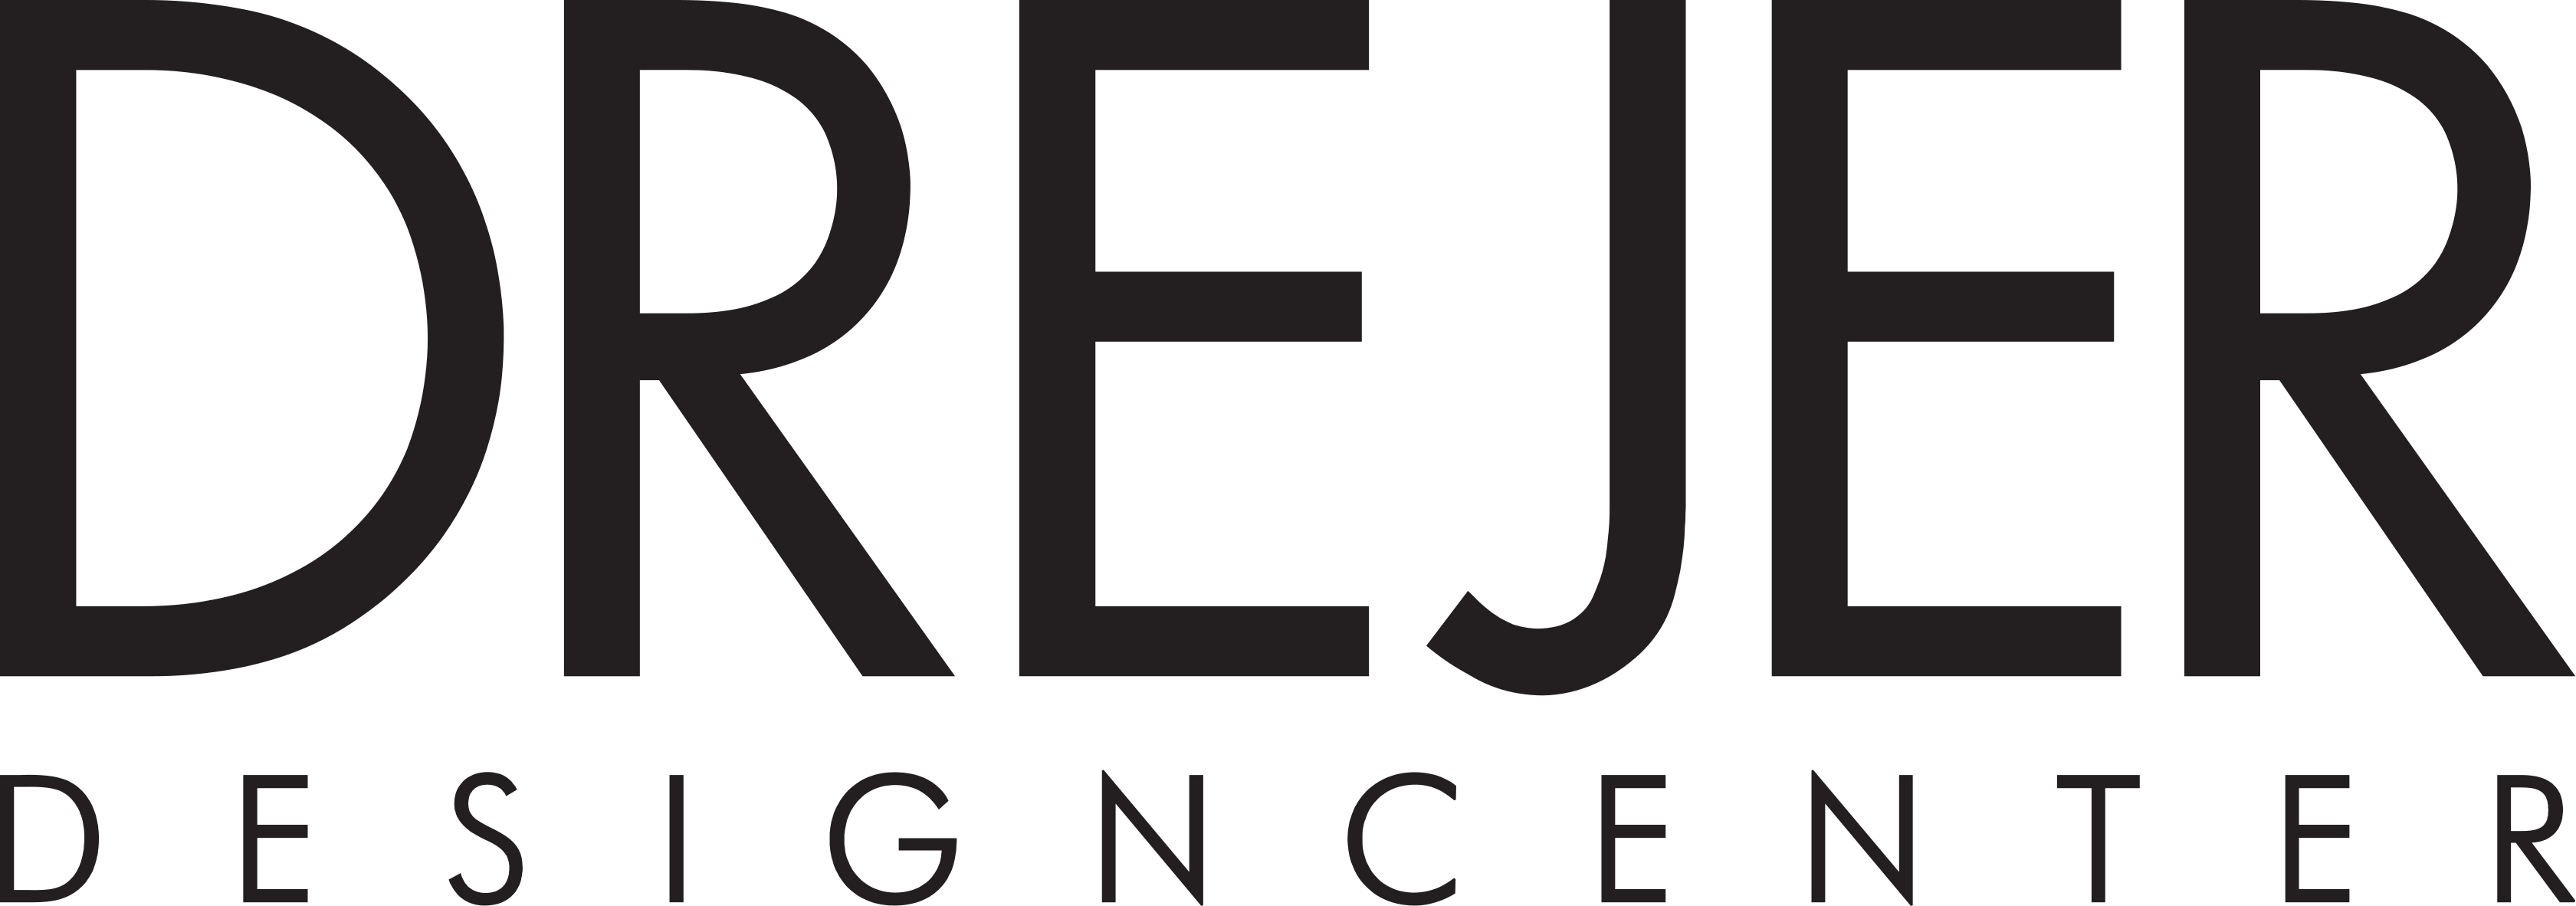 Drejer Design Center logo